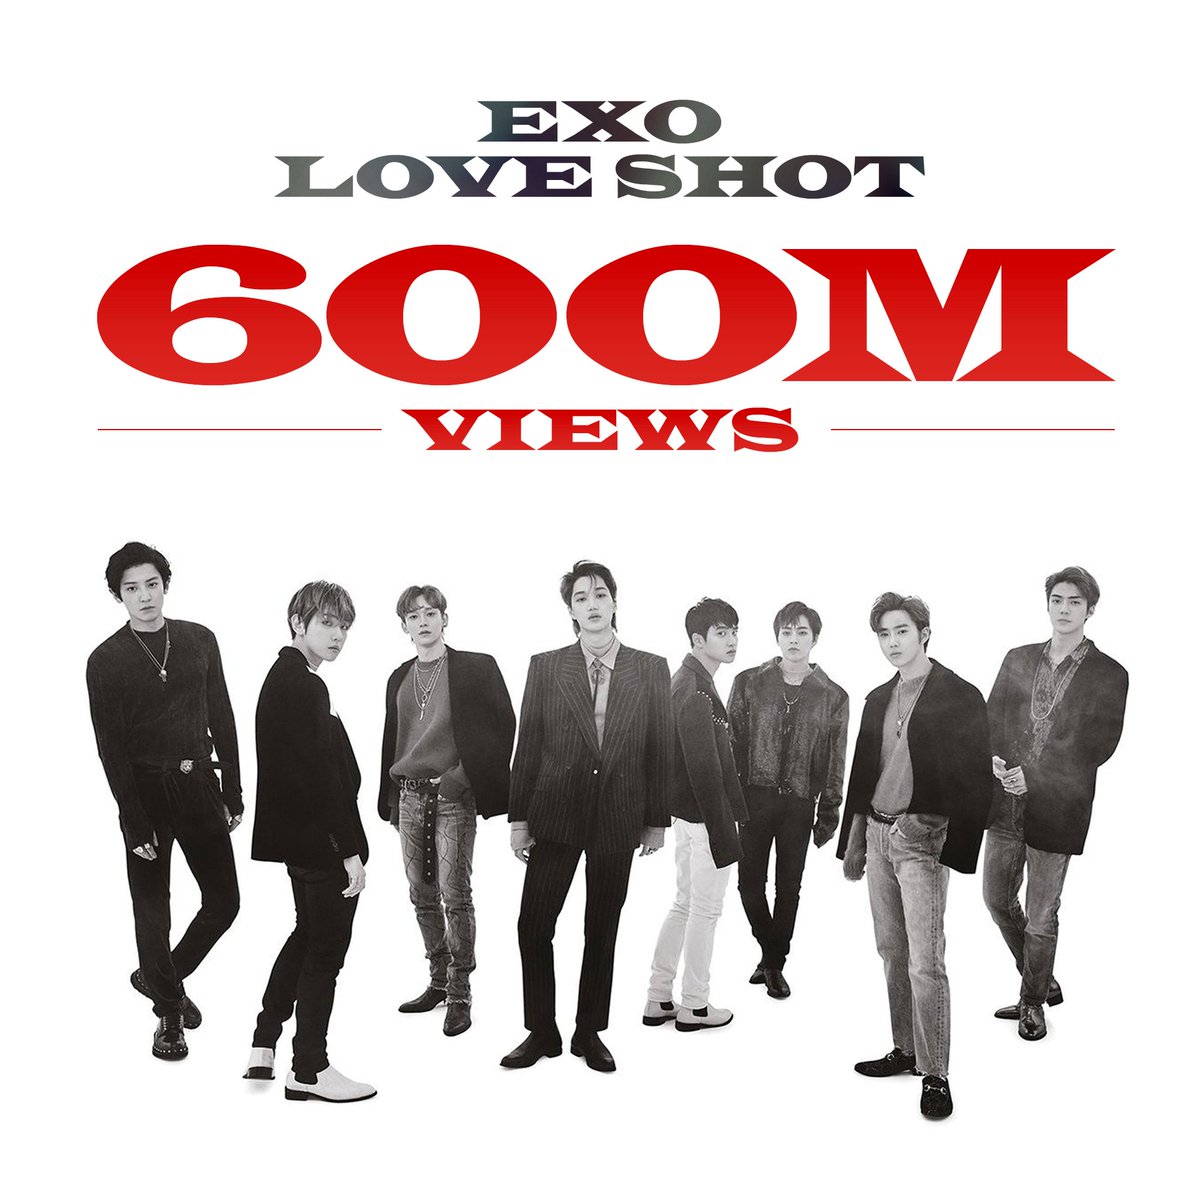 엑소 'Love Shot' MV 유튜브 조회수 6억뷰 돌파! EXO 'Love Shot' MV HITS 600 MILLION VIEWS on YouTube! youtube.com/watch?v=pSudEW… #EXO #엑소 #weareoneEXO #LoveShot